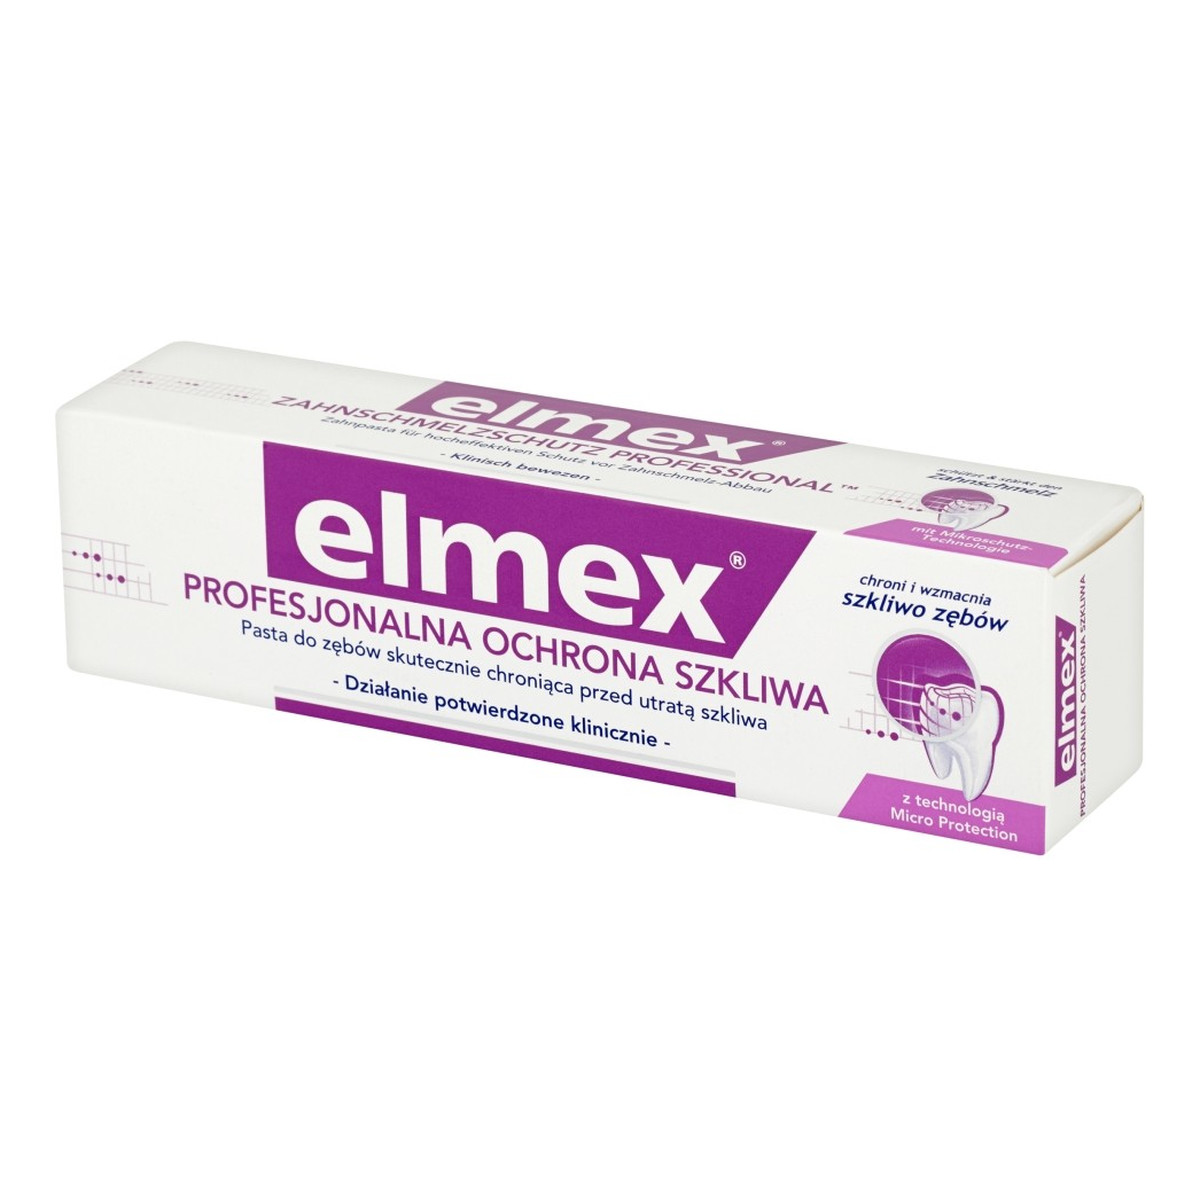 elmex Profesjonalna Ochrona Szkliwa Pasta do zębów 75ml